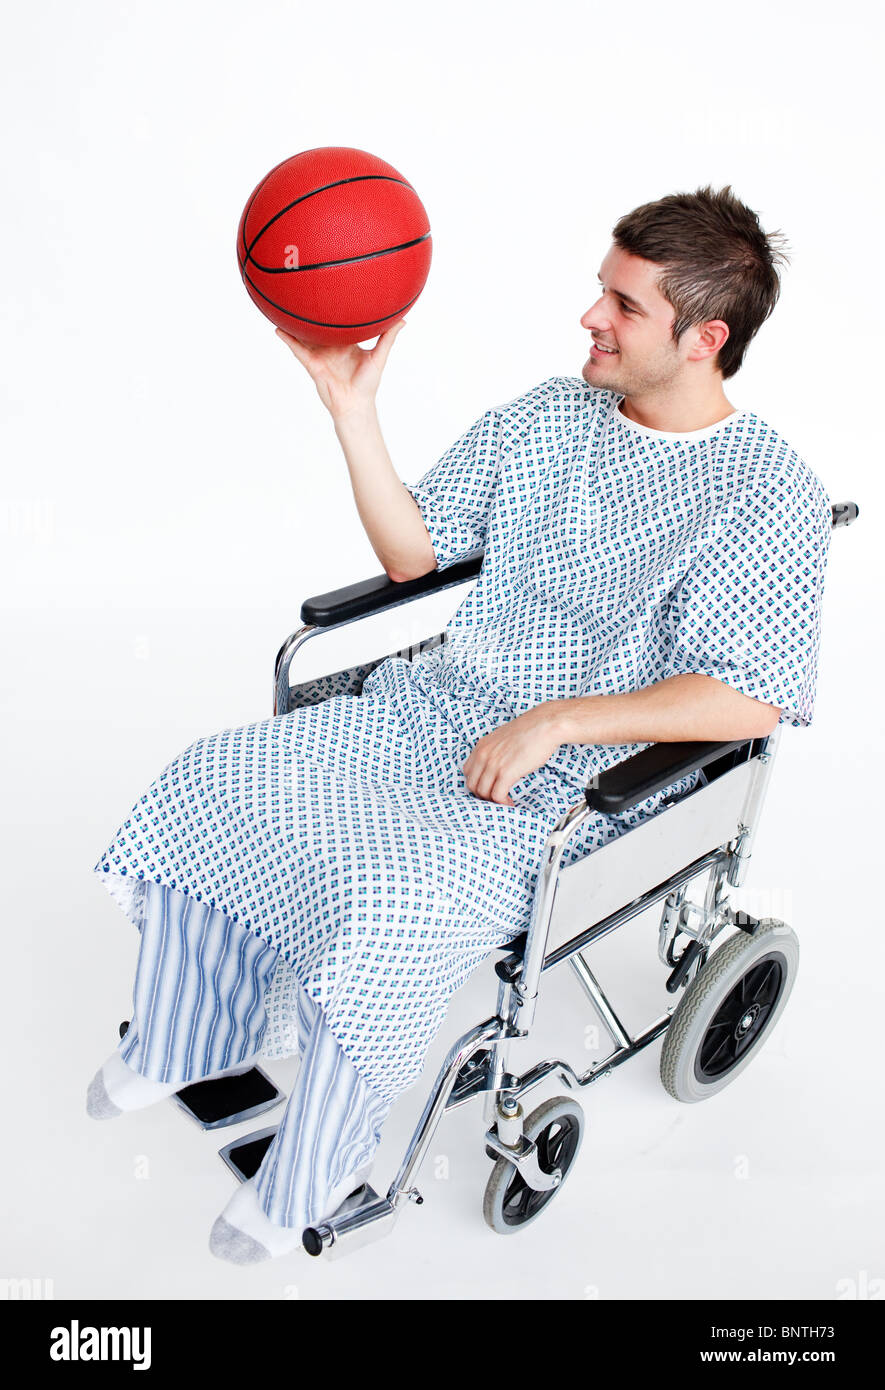 Patient en fauteuil roulant avec un ballon Banque D'Images